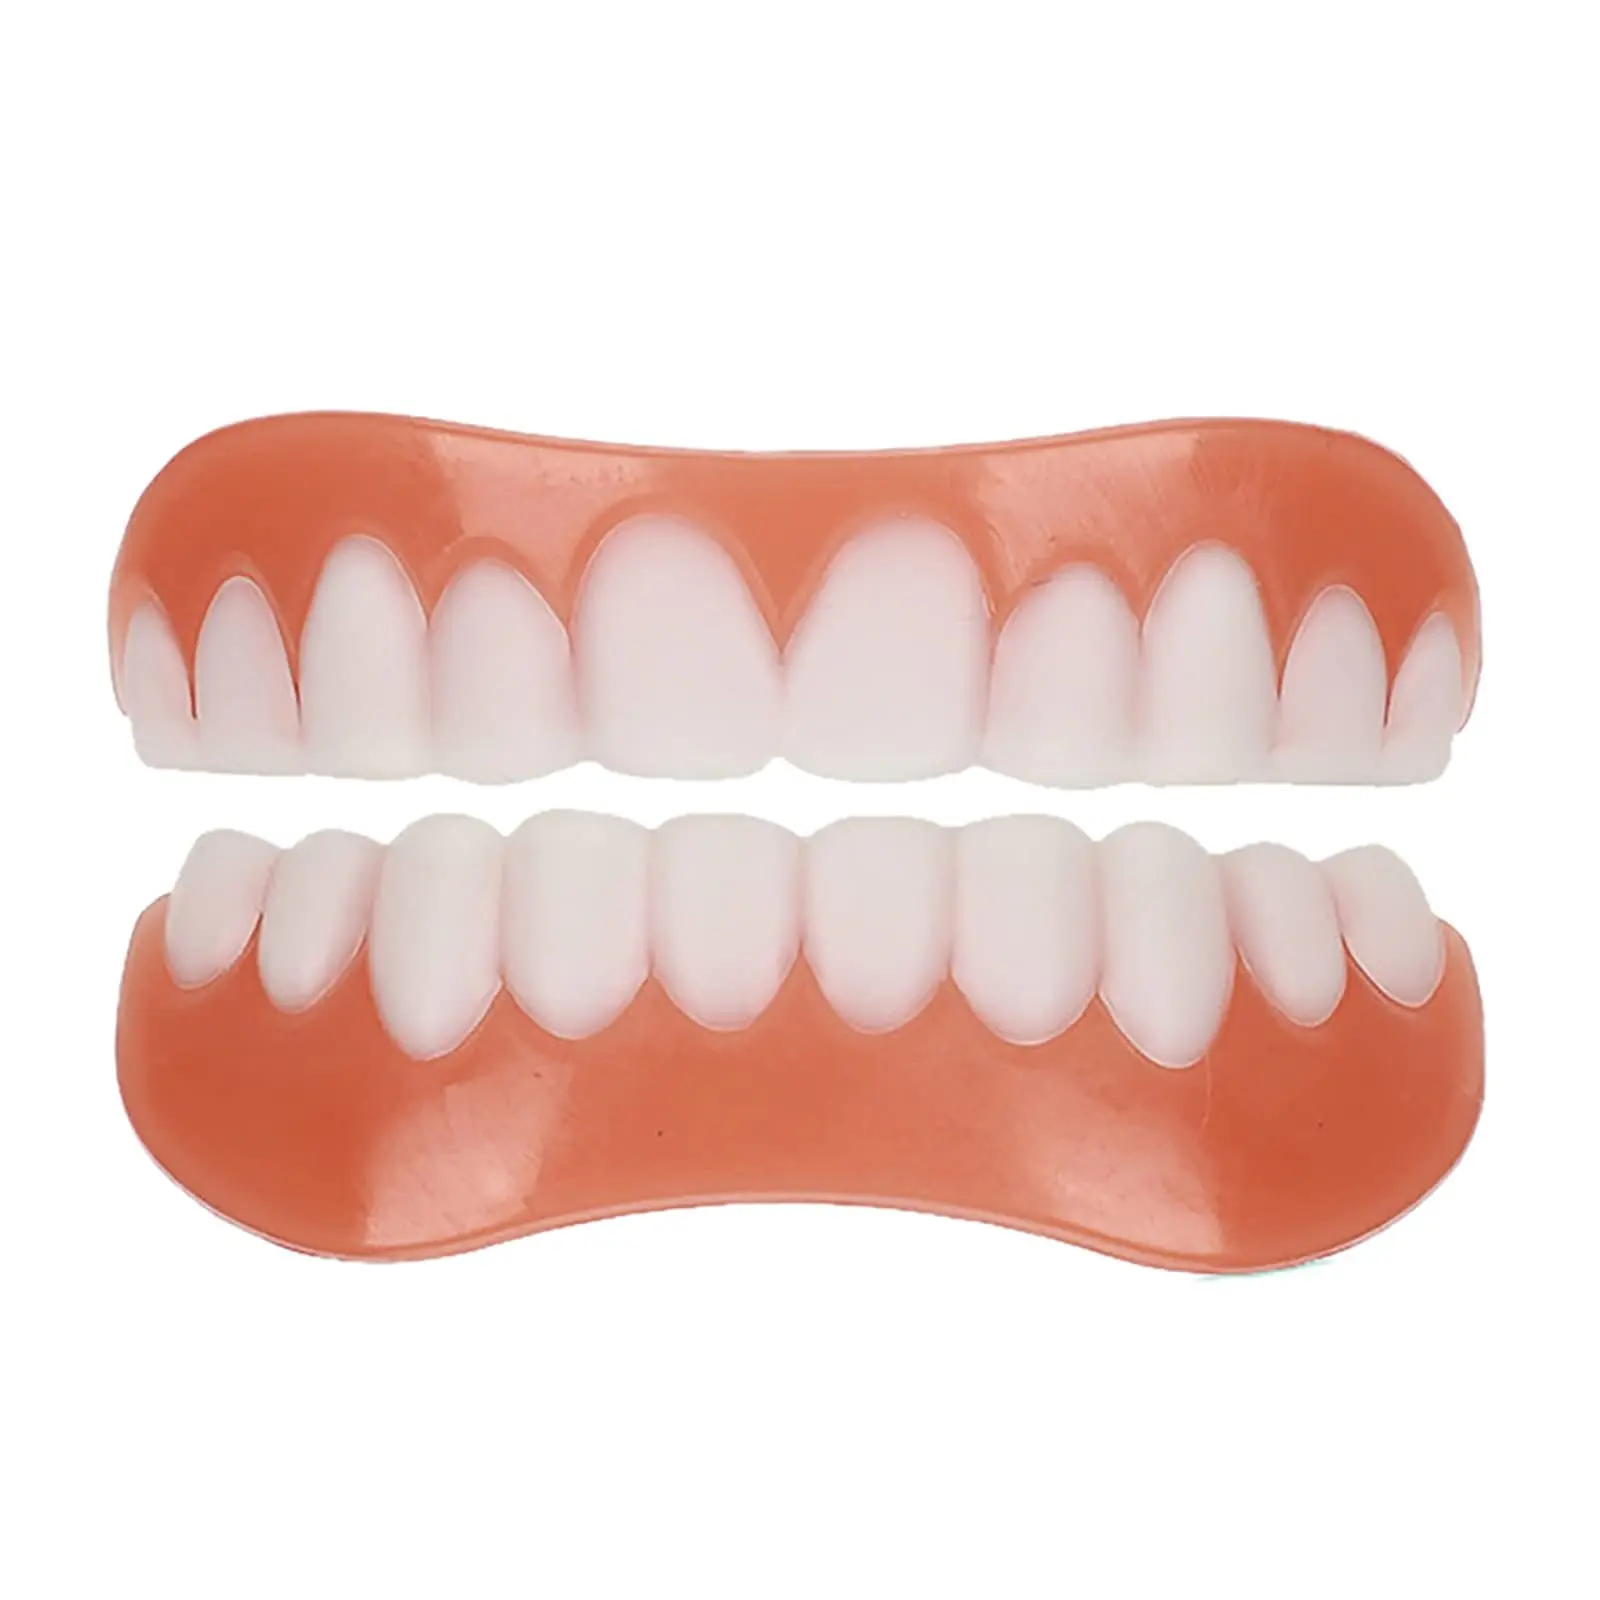 Duración y mantenimiento de los dientes falsos estéticos